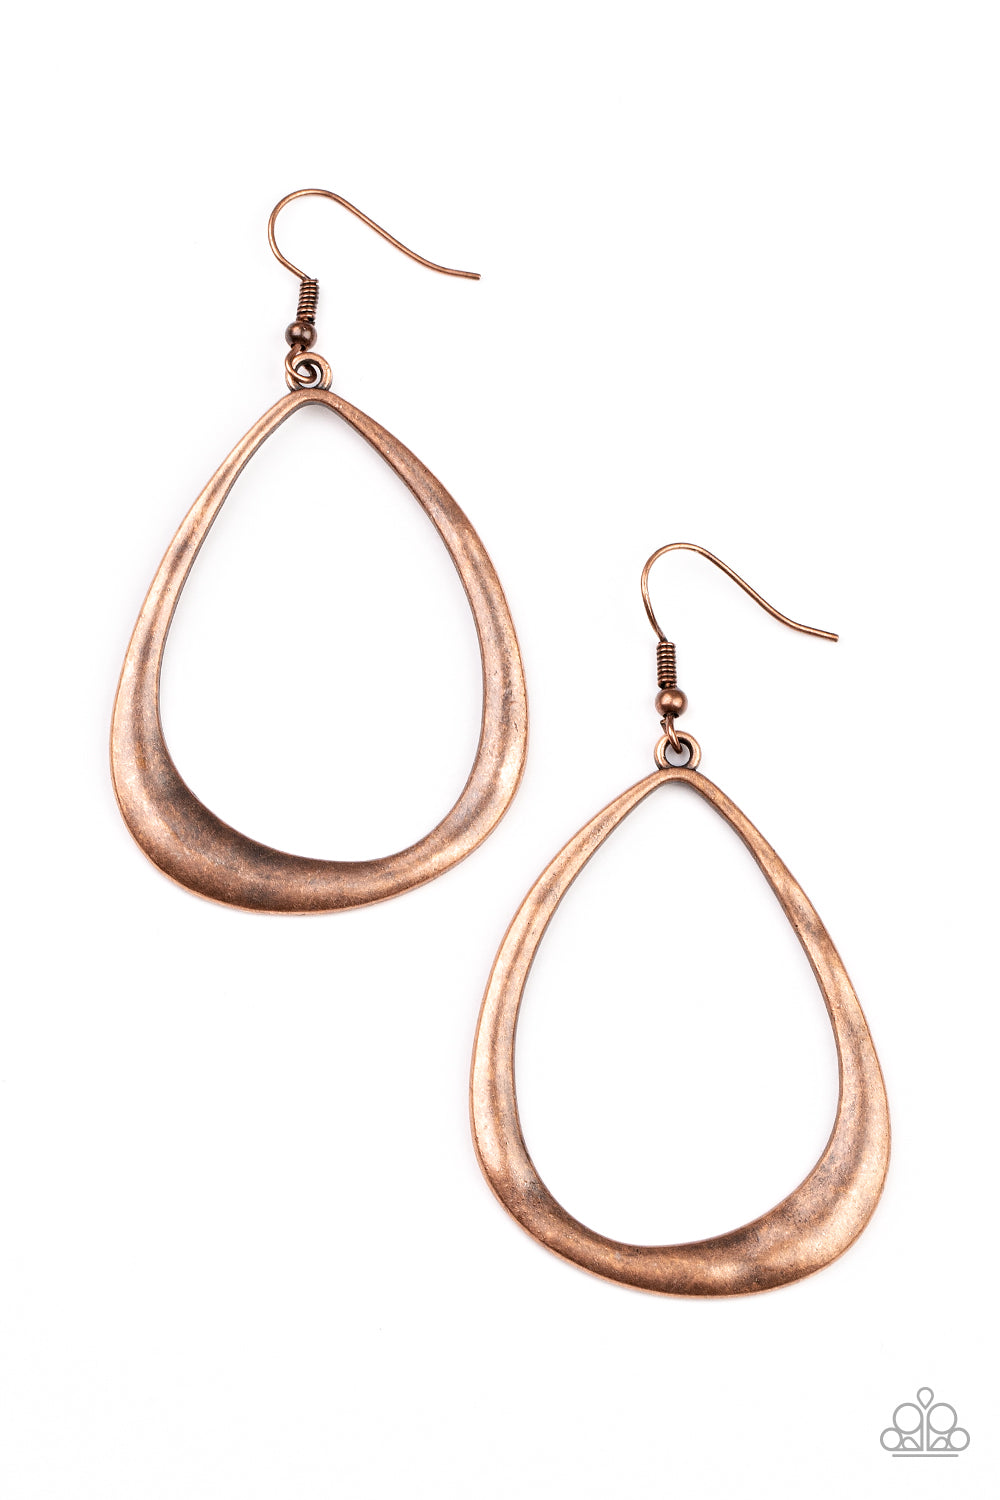 Paparazzi - ARTISAN Gallery - Copper Earrings